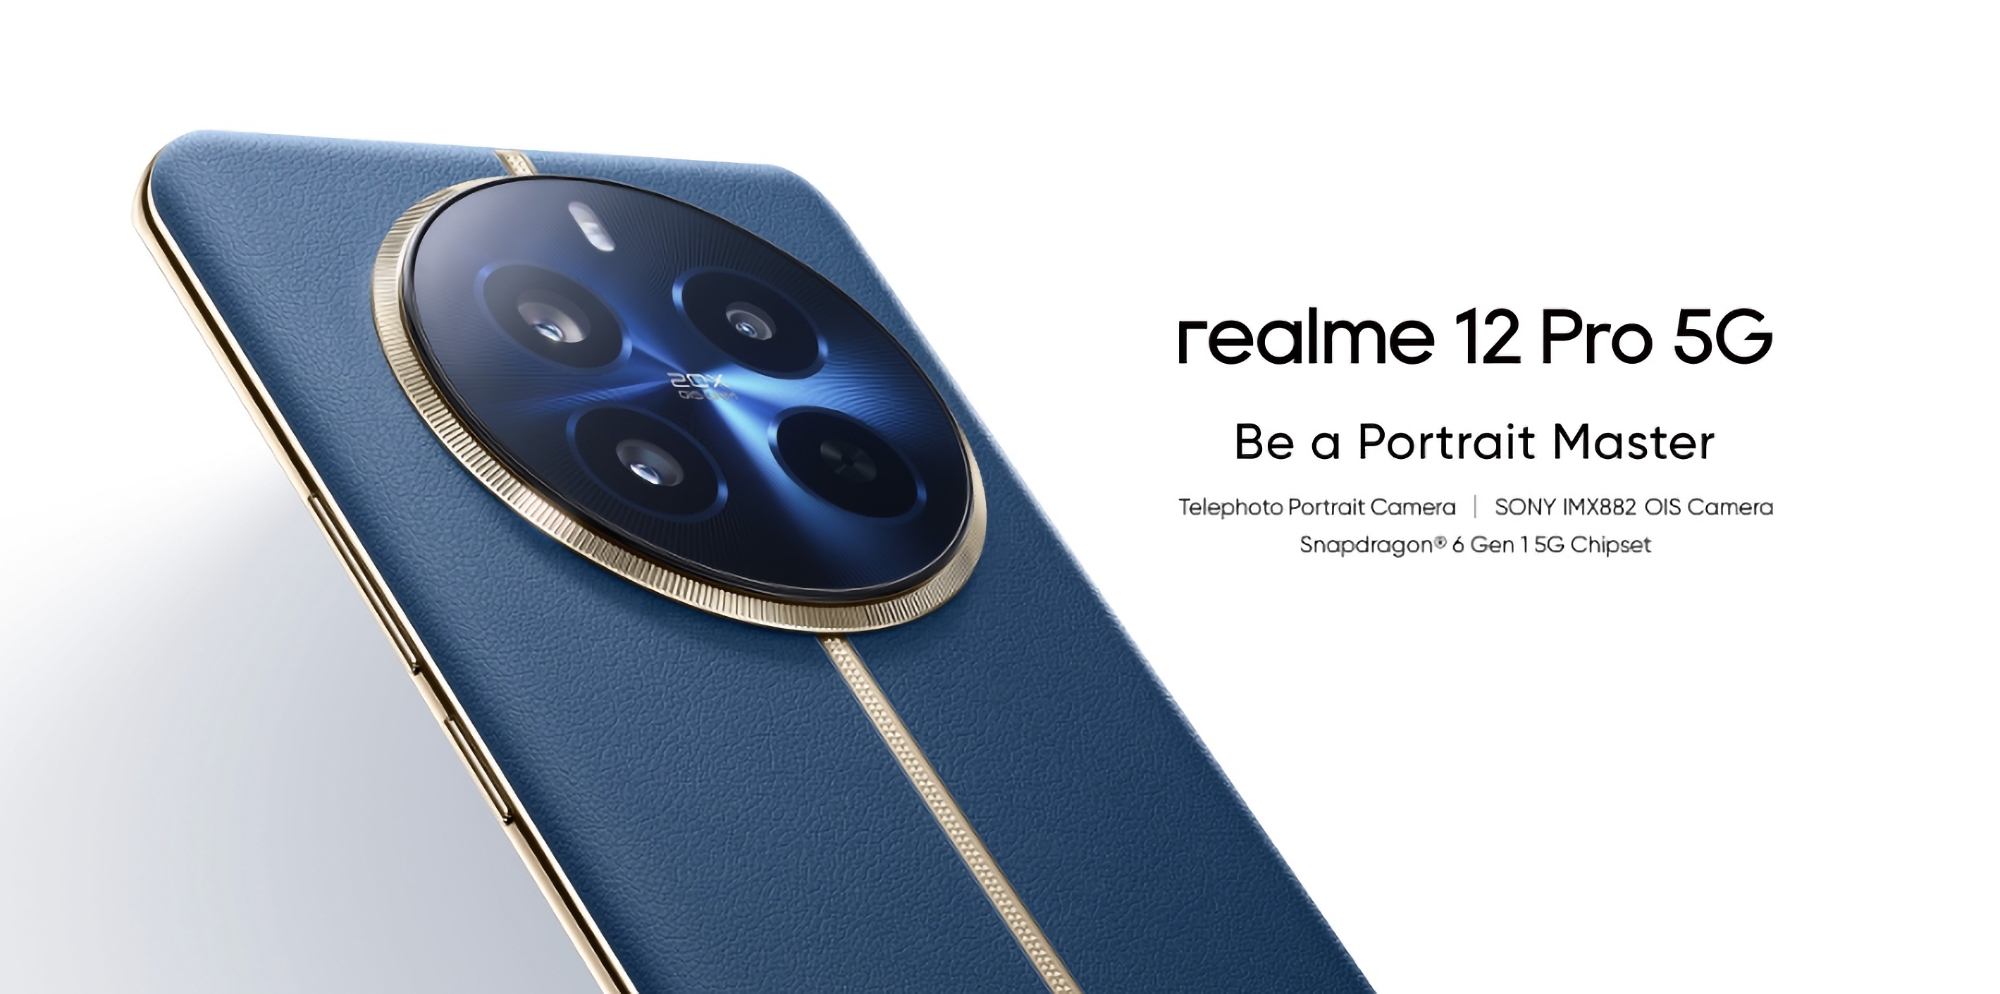 Realme 12 Pro: wyświetlacz OLED, procesor Snapdragon 6 Gen 1, bateria 5000 mAh z ładowaniem 67 W i aparat 50 MP z OIS za 310 USD